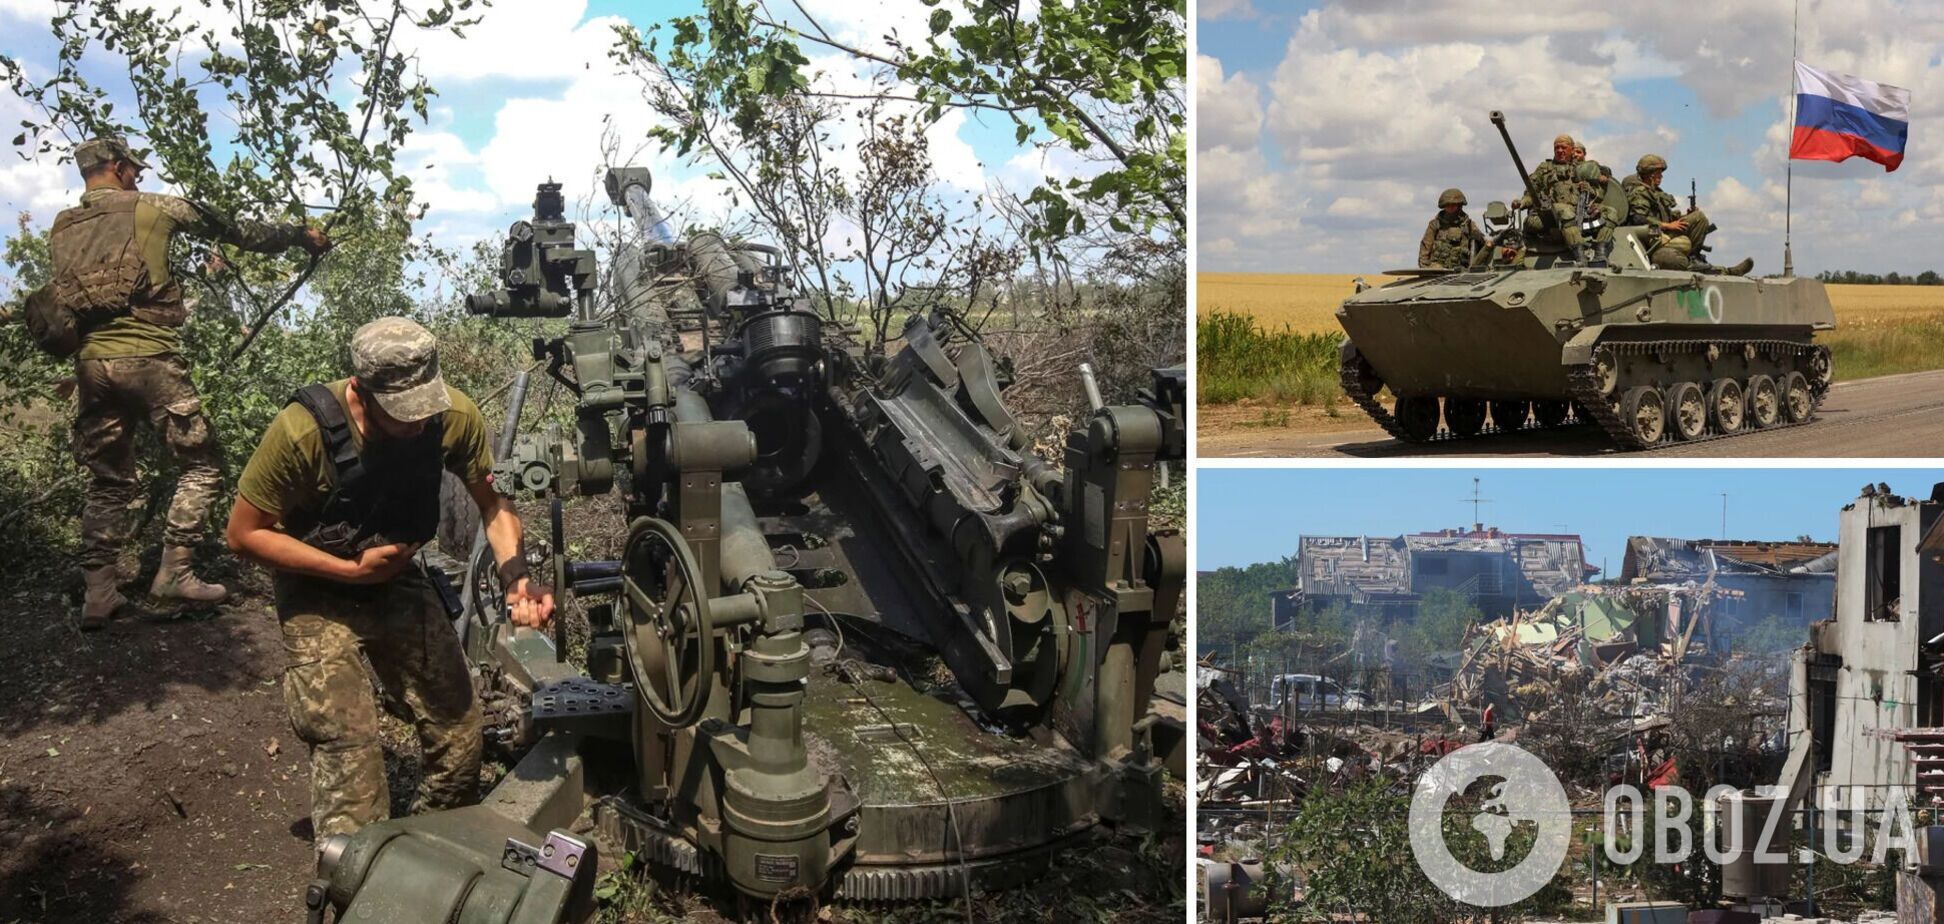 ВСУ обезвредили ДРГ и отбили штурмы на Донбассе, РФ из мести бьет по мирному населению – Генштаб